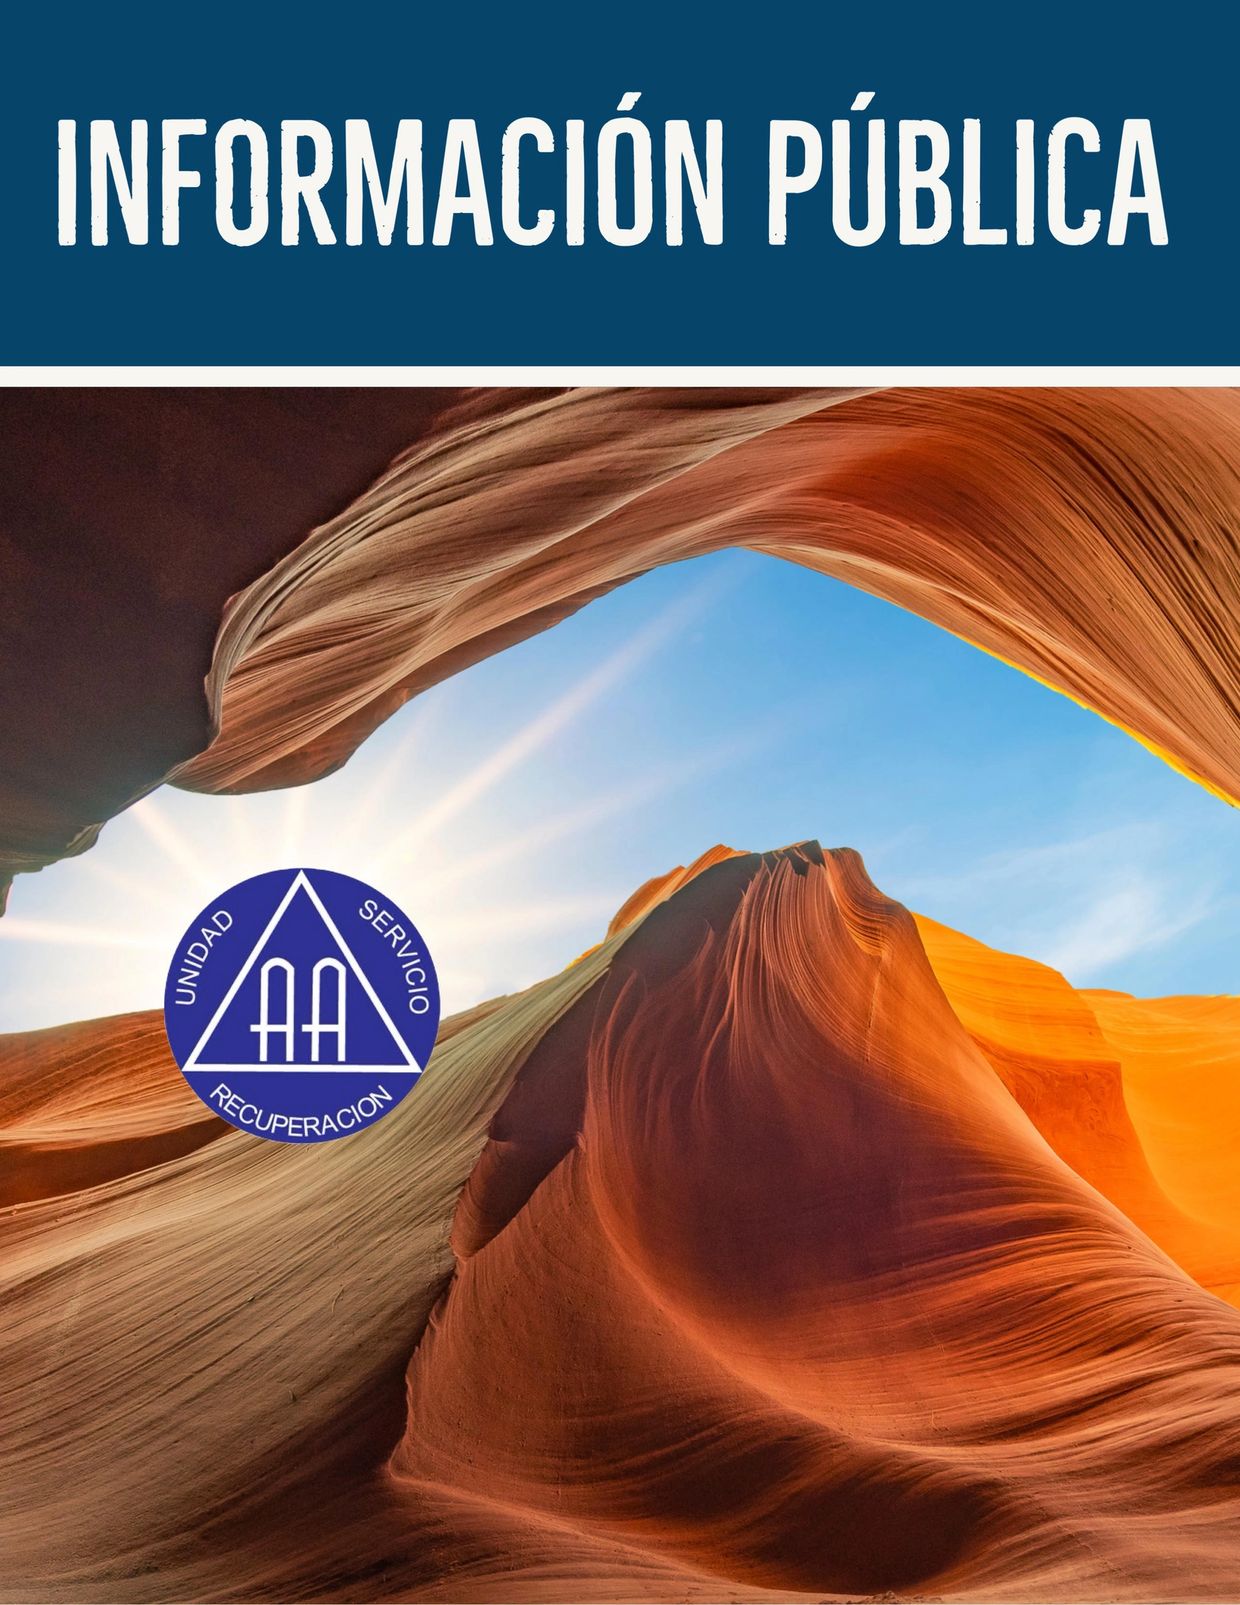 Información pública (IP). Alcohólicos Anónimos en el sur de Arizona. Difusión de Información de AA.